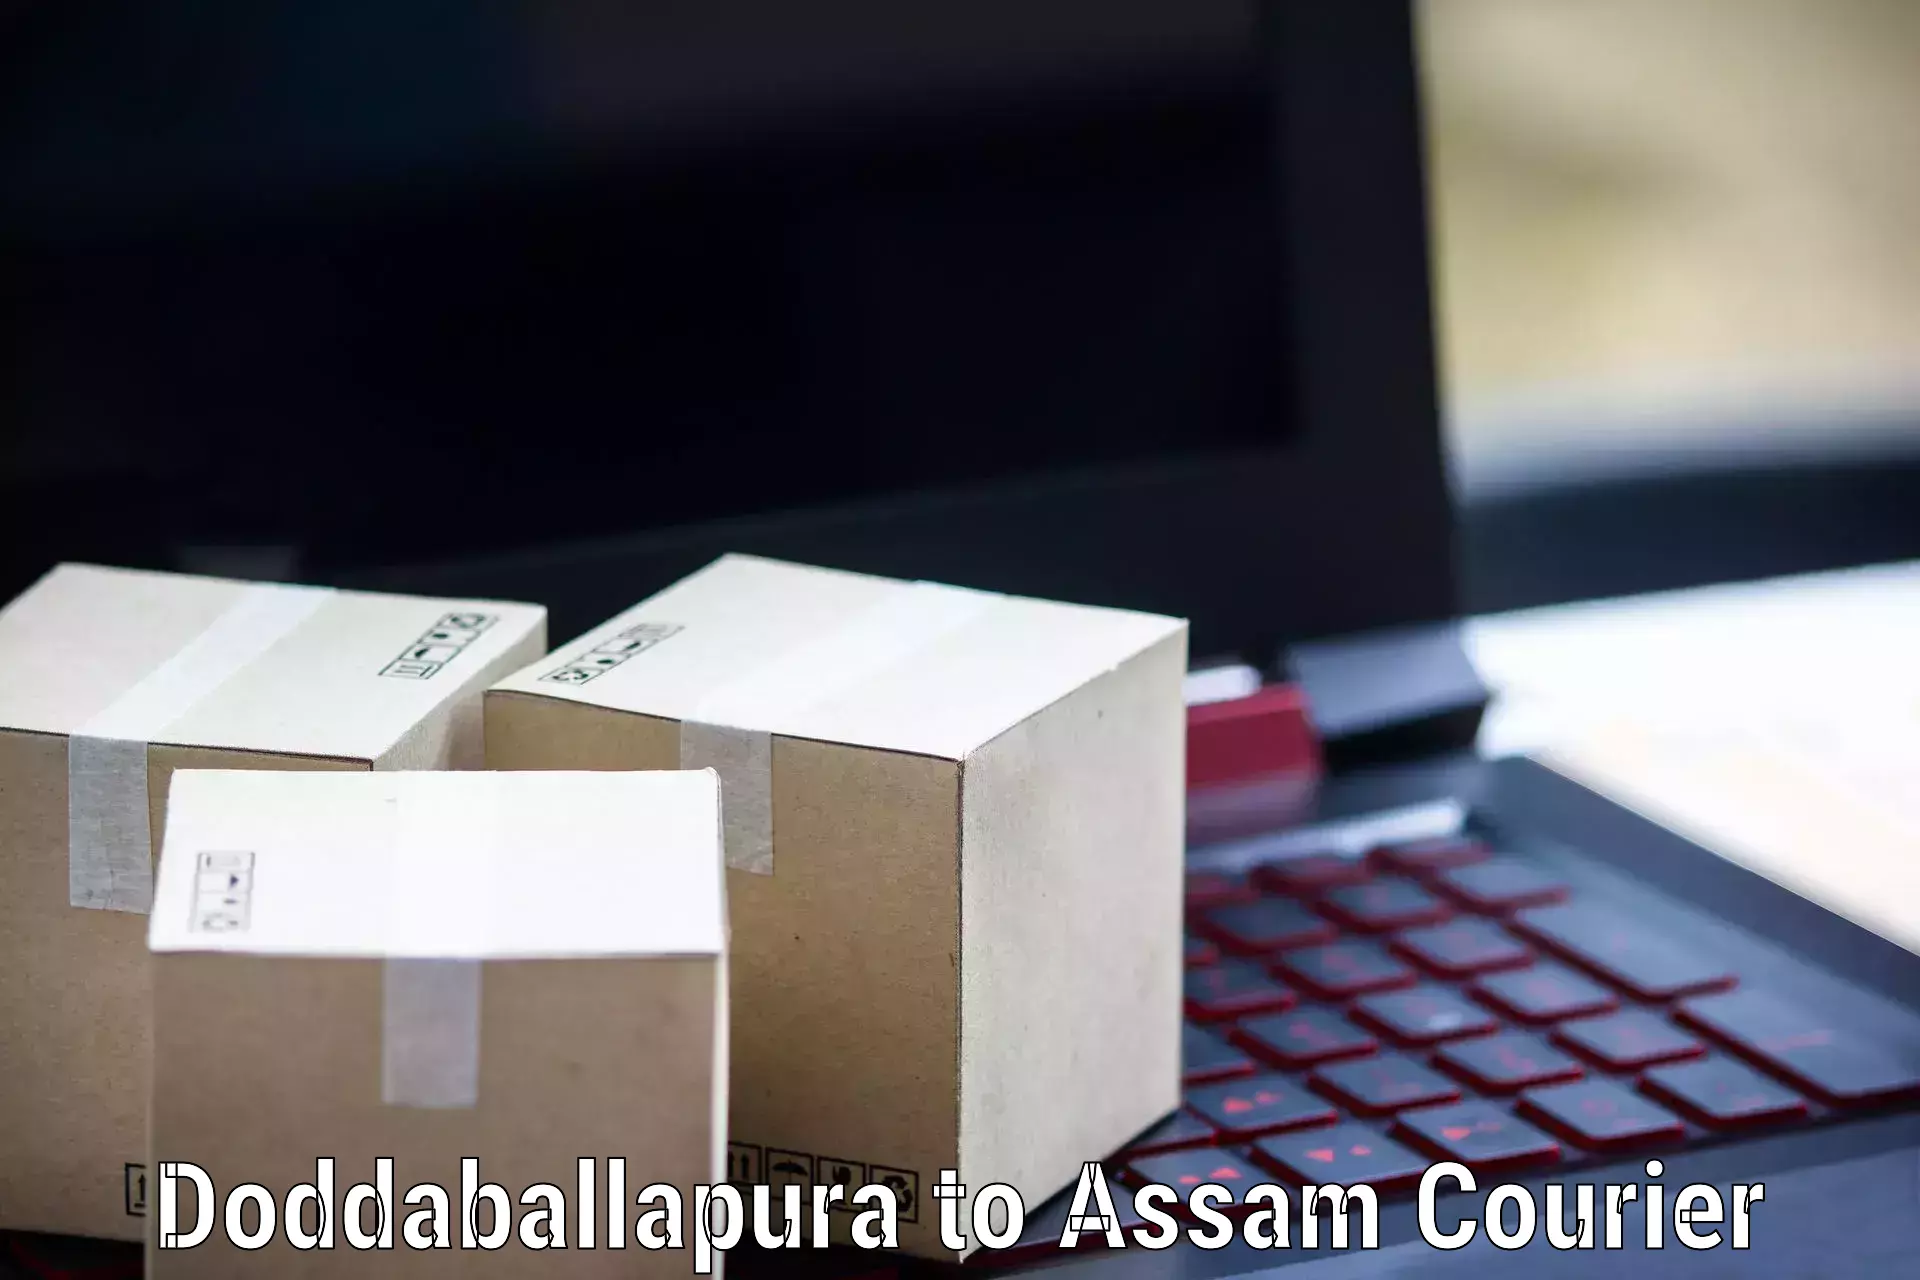 Bulk courier orders Doddaballapura to Hojai Lanka